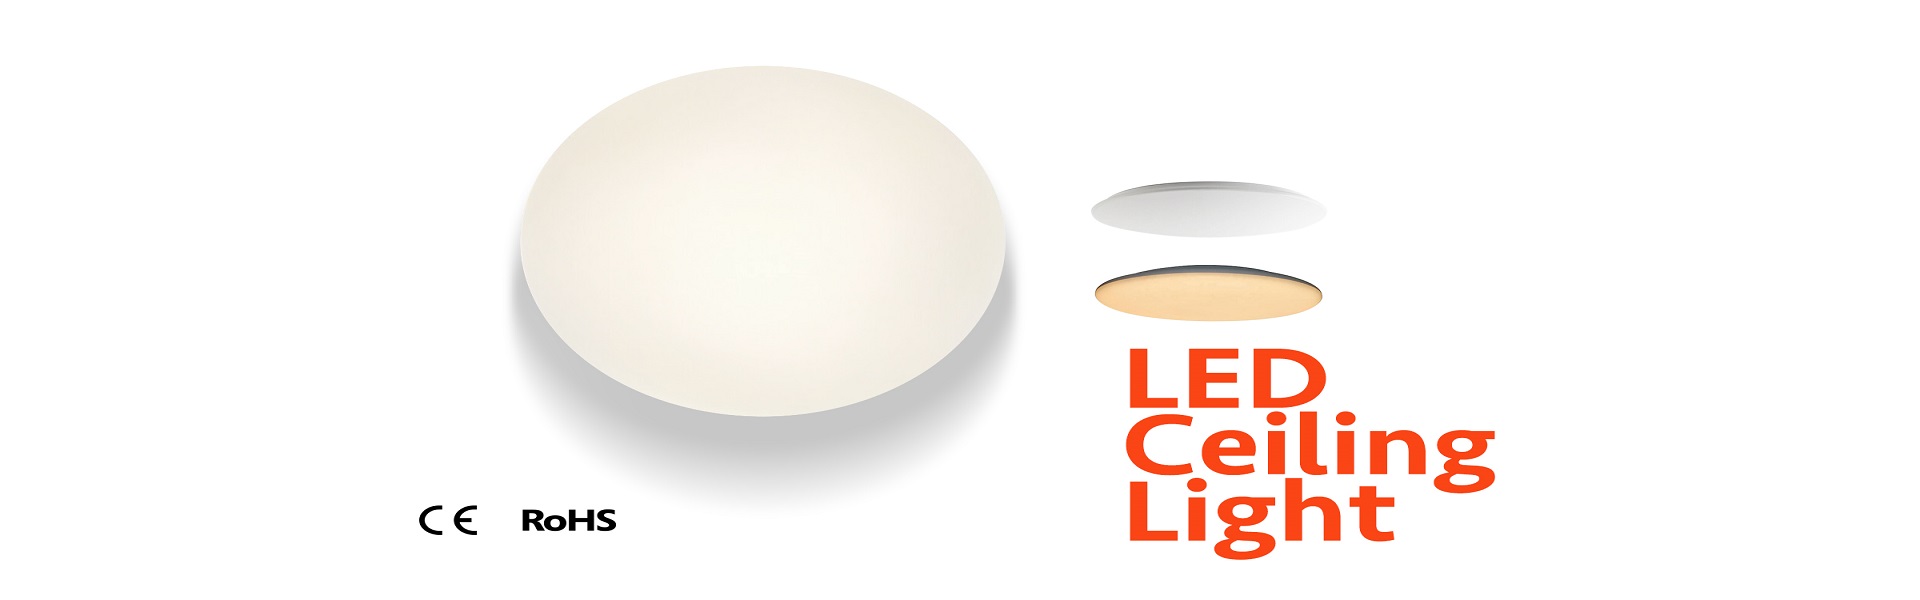 12-LED-Ceiling-Light